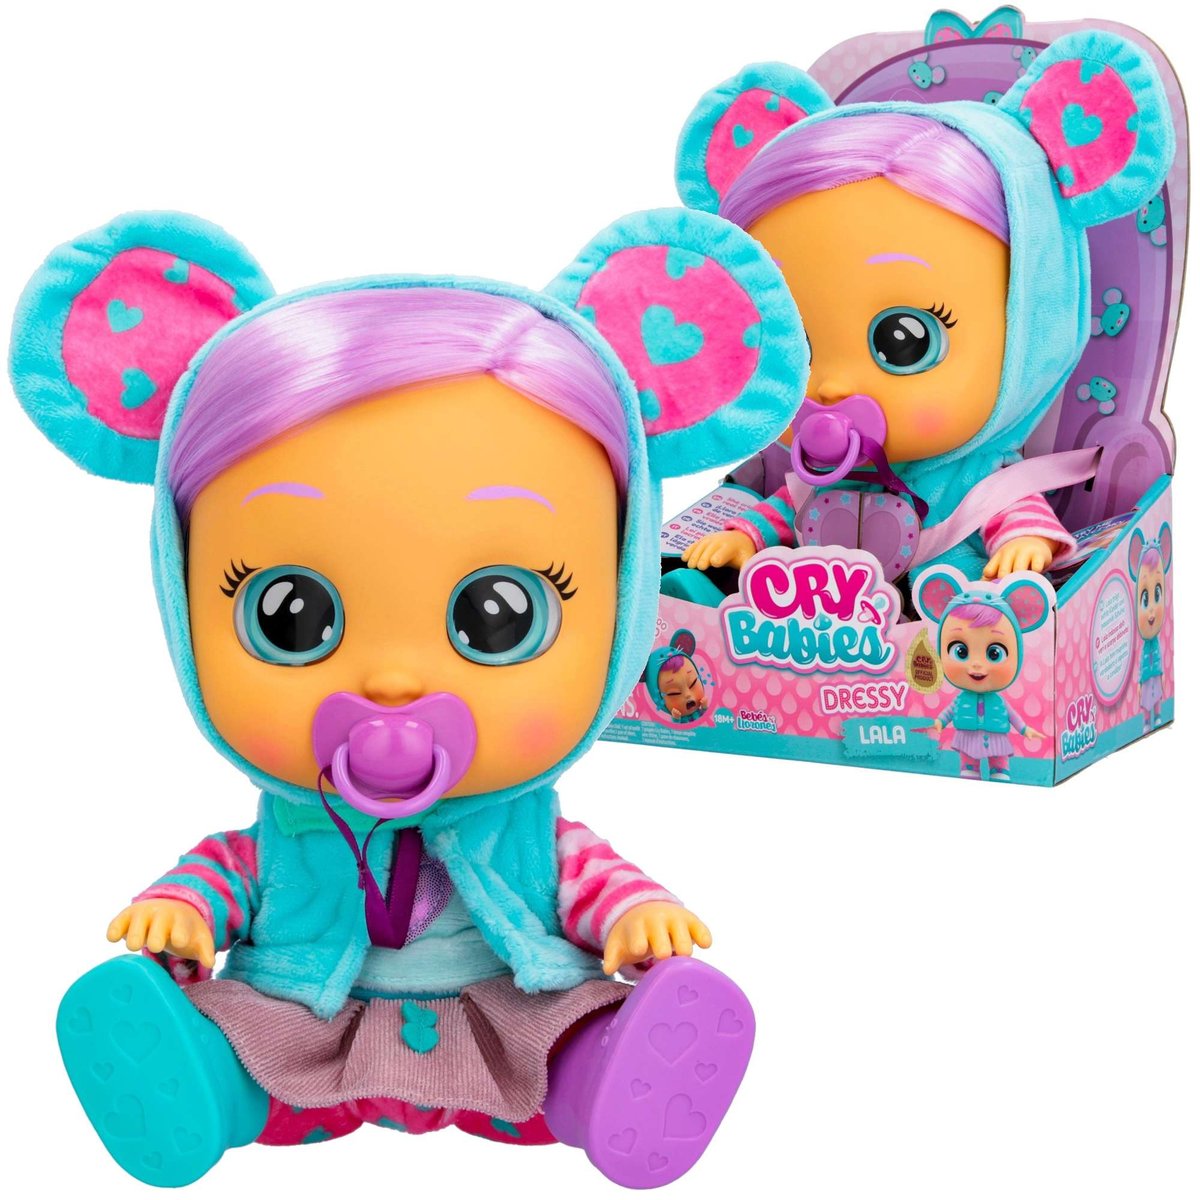 TM Toys Cry Babies Lalka Dressy Lala IMC83301